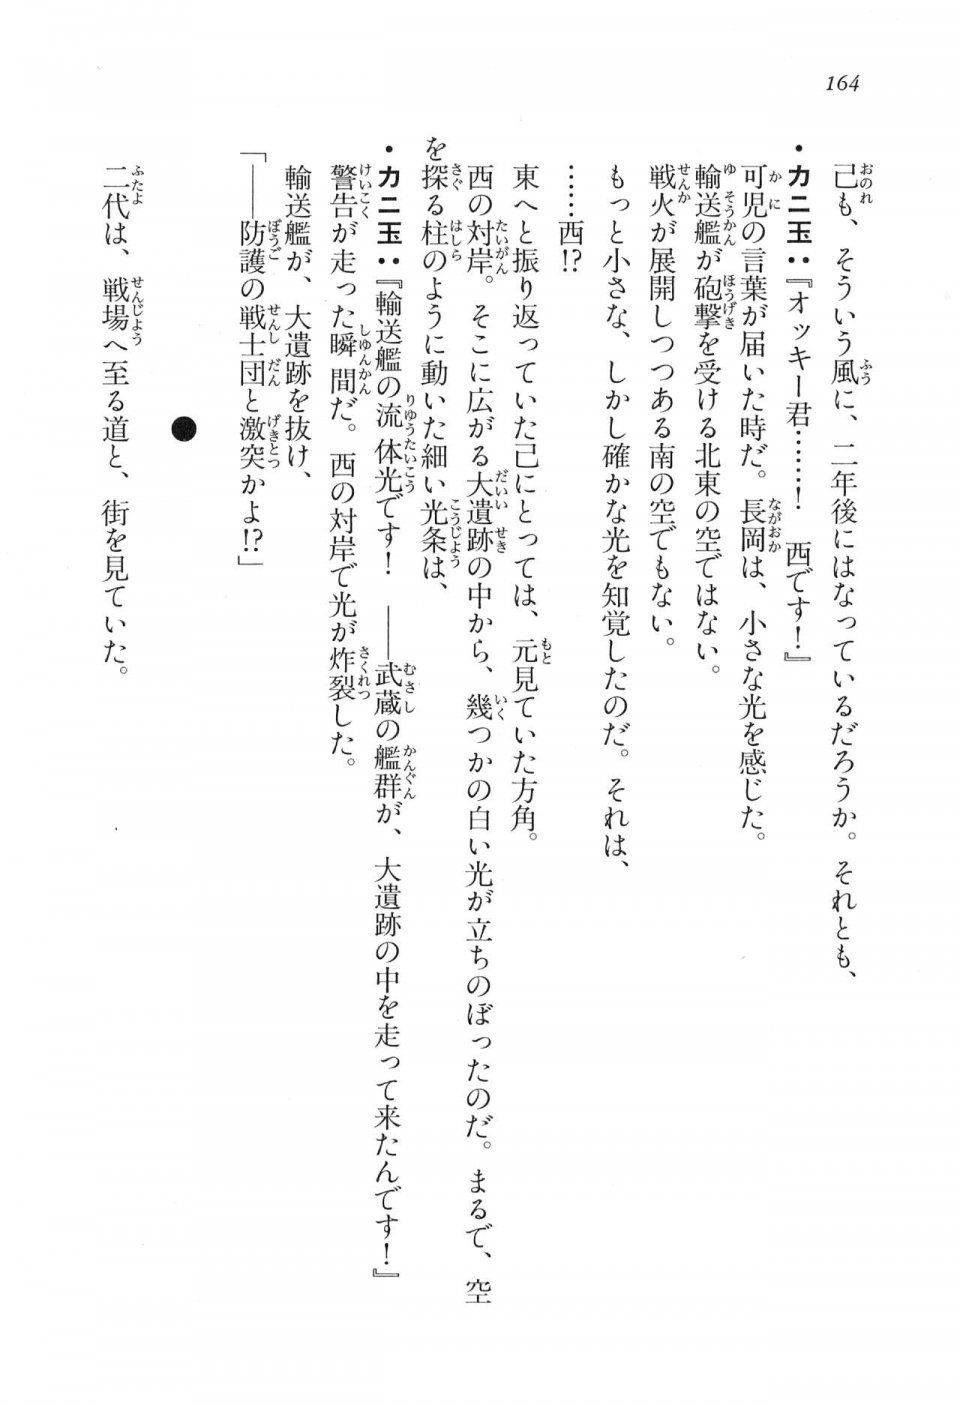 Kyoukai Senjou no Horizon LN Vol 17(7B) - Photo #164